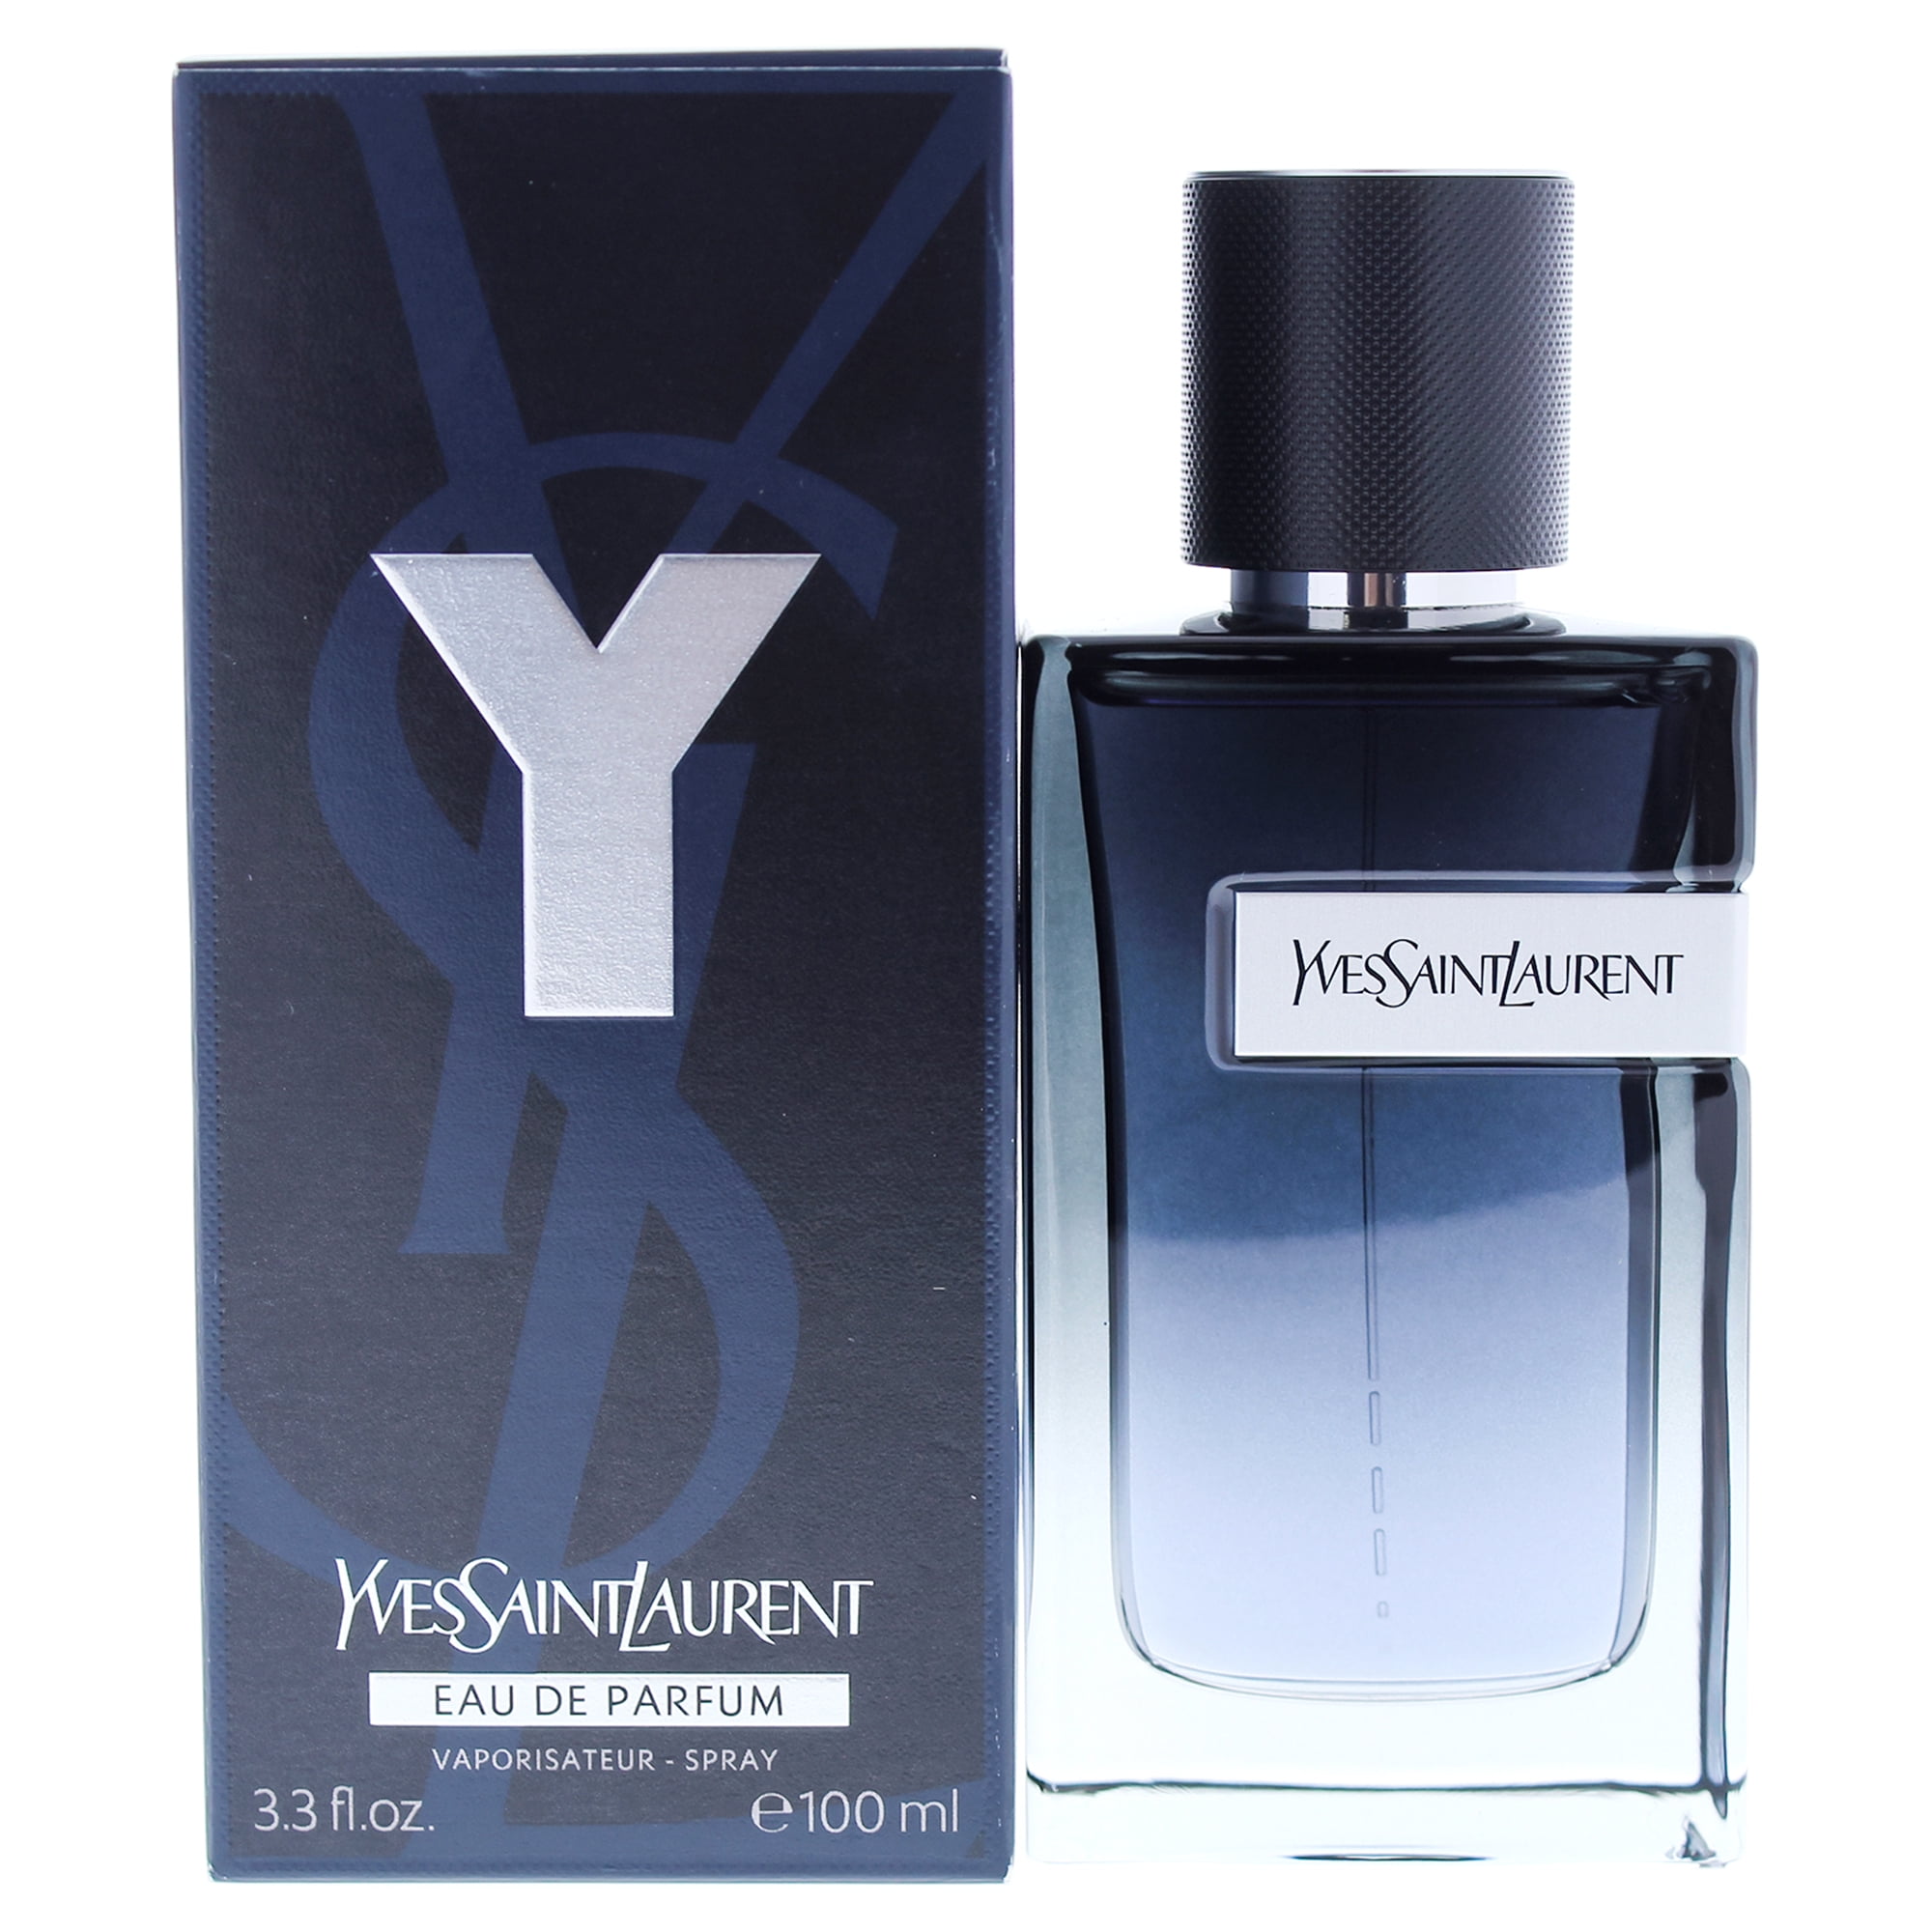 Yves Saint Laurent Y Eau de Toilette, Perfume for Women, 3.3 Oz ...